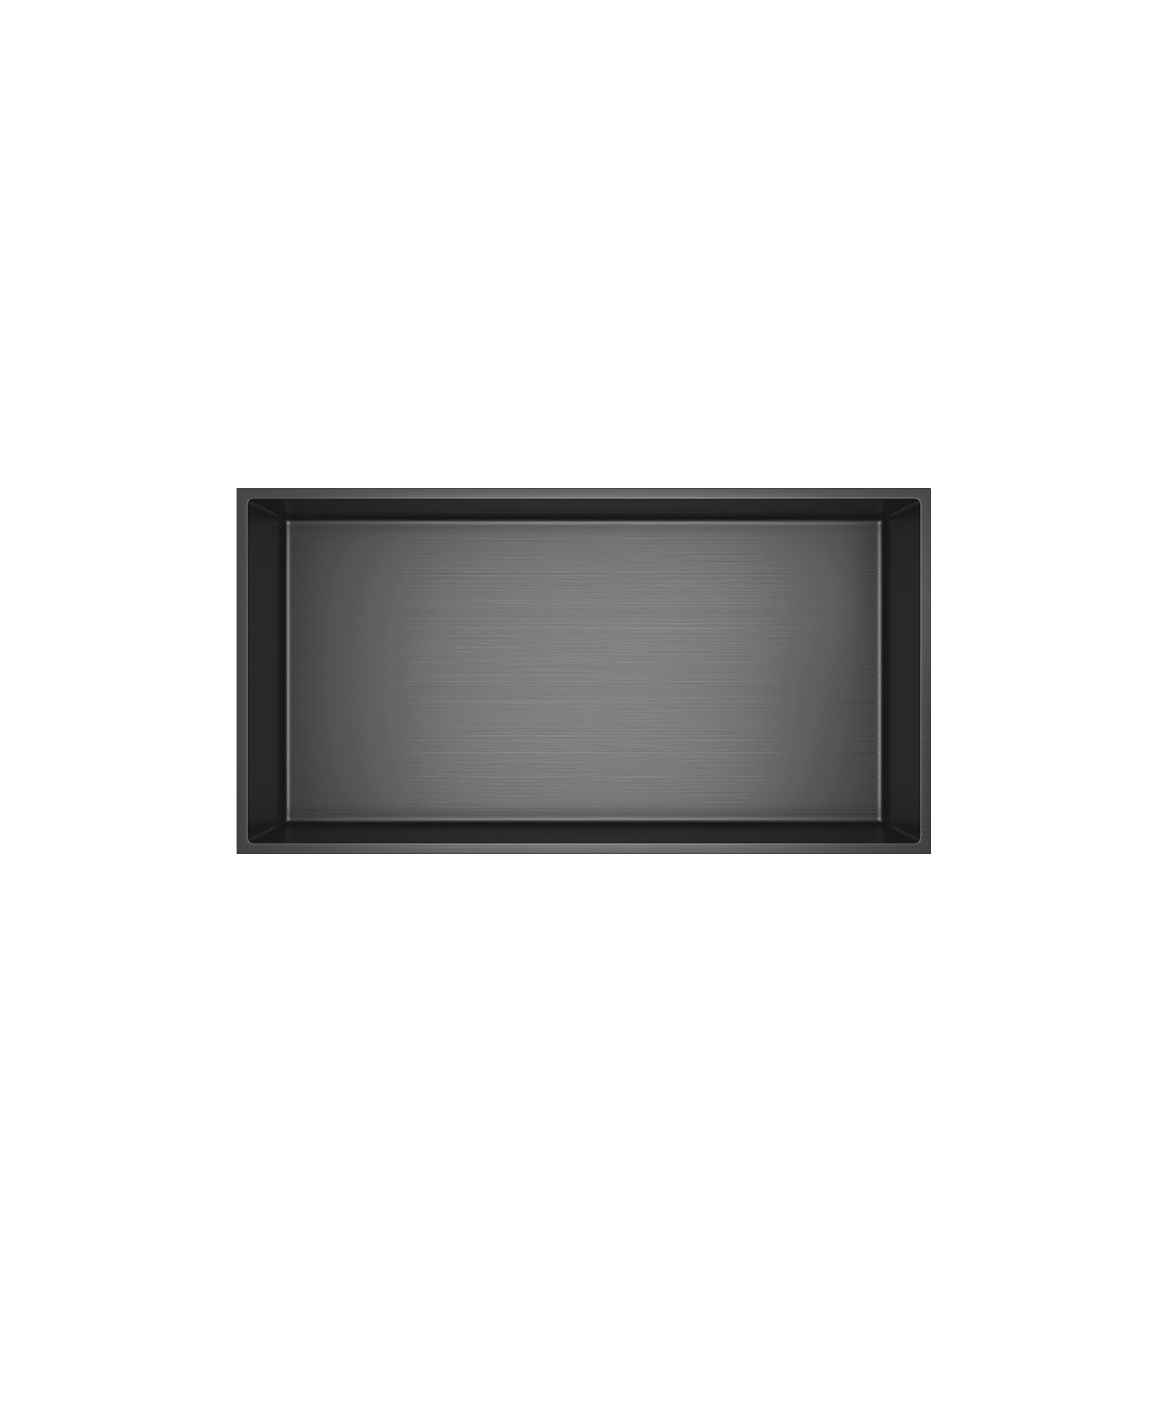 Wandnische Edelstahl grau gebürstet rostfrei 300x600x100mm - Grau - Aloni